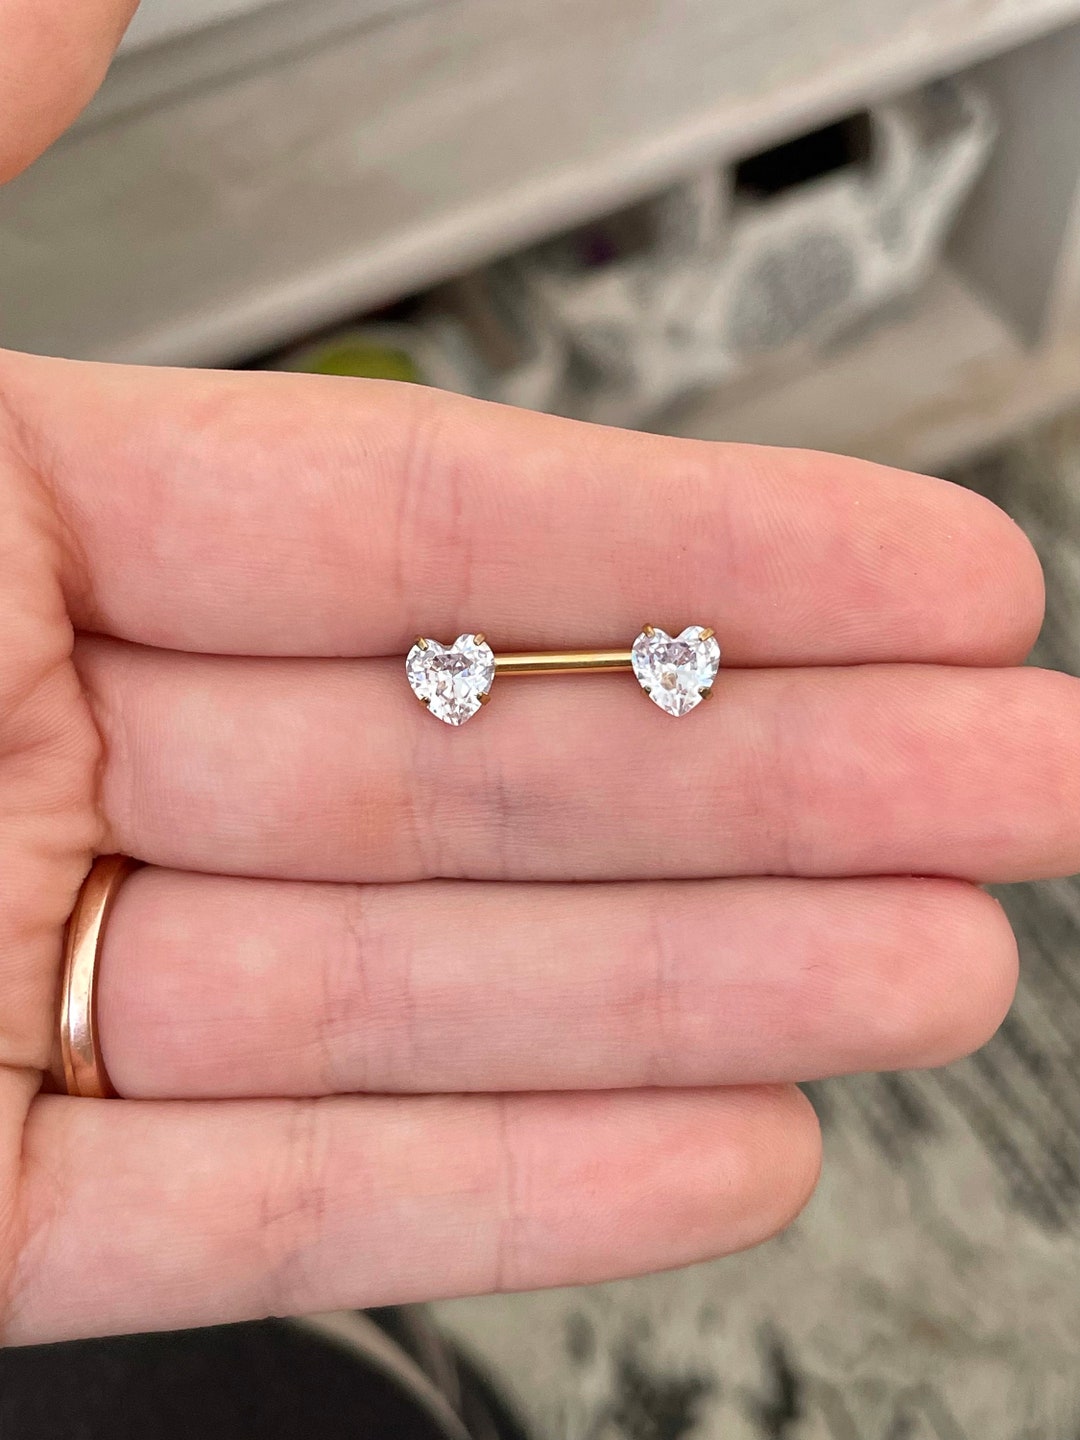 Cute Clear Diamond Nipple Rings